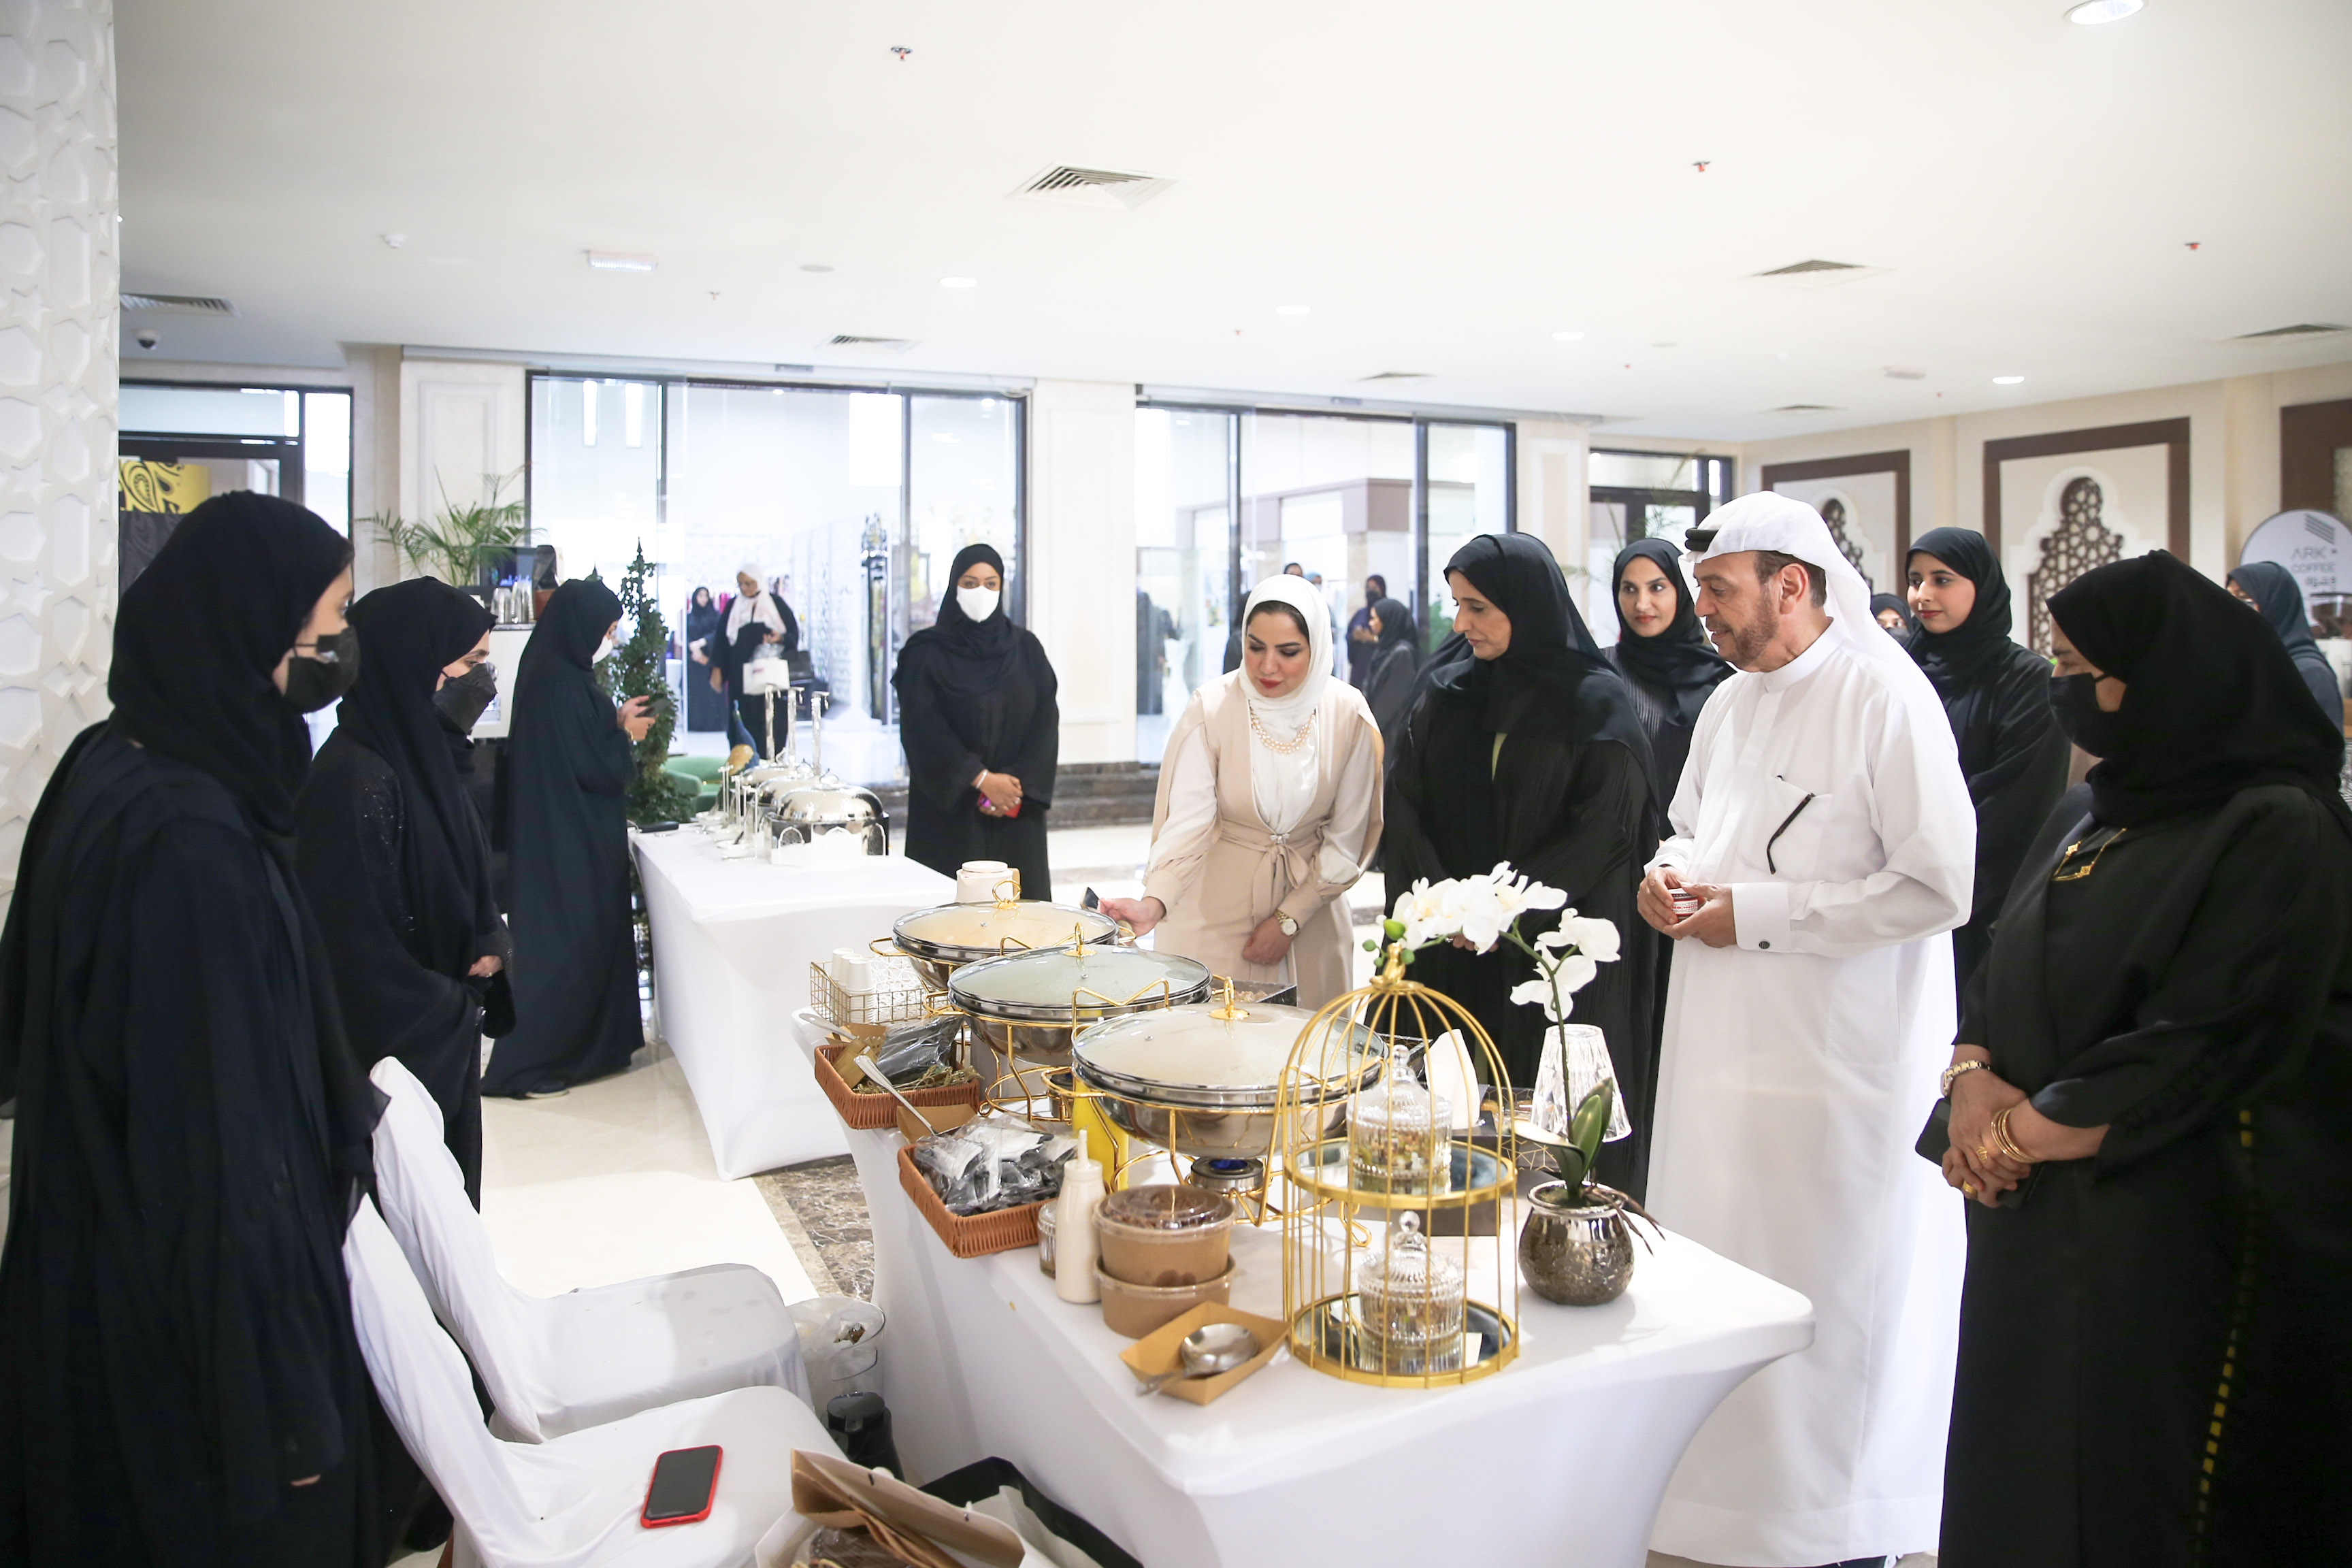 إنطلاق "ملتقى ومعرض المجلس الخليجي الأول 2022 للأزياء والمجوهرات" بتنظيم مجلس سيدات اعمال عجمان